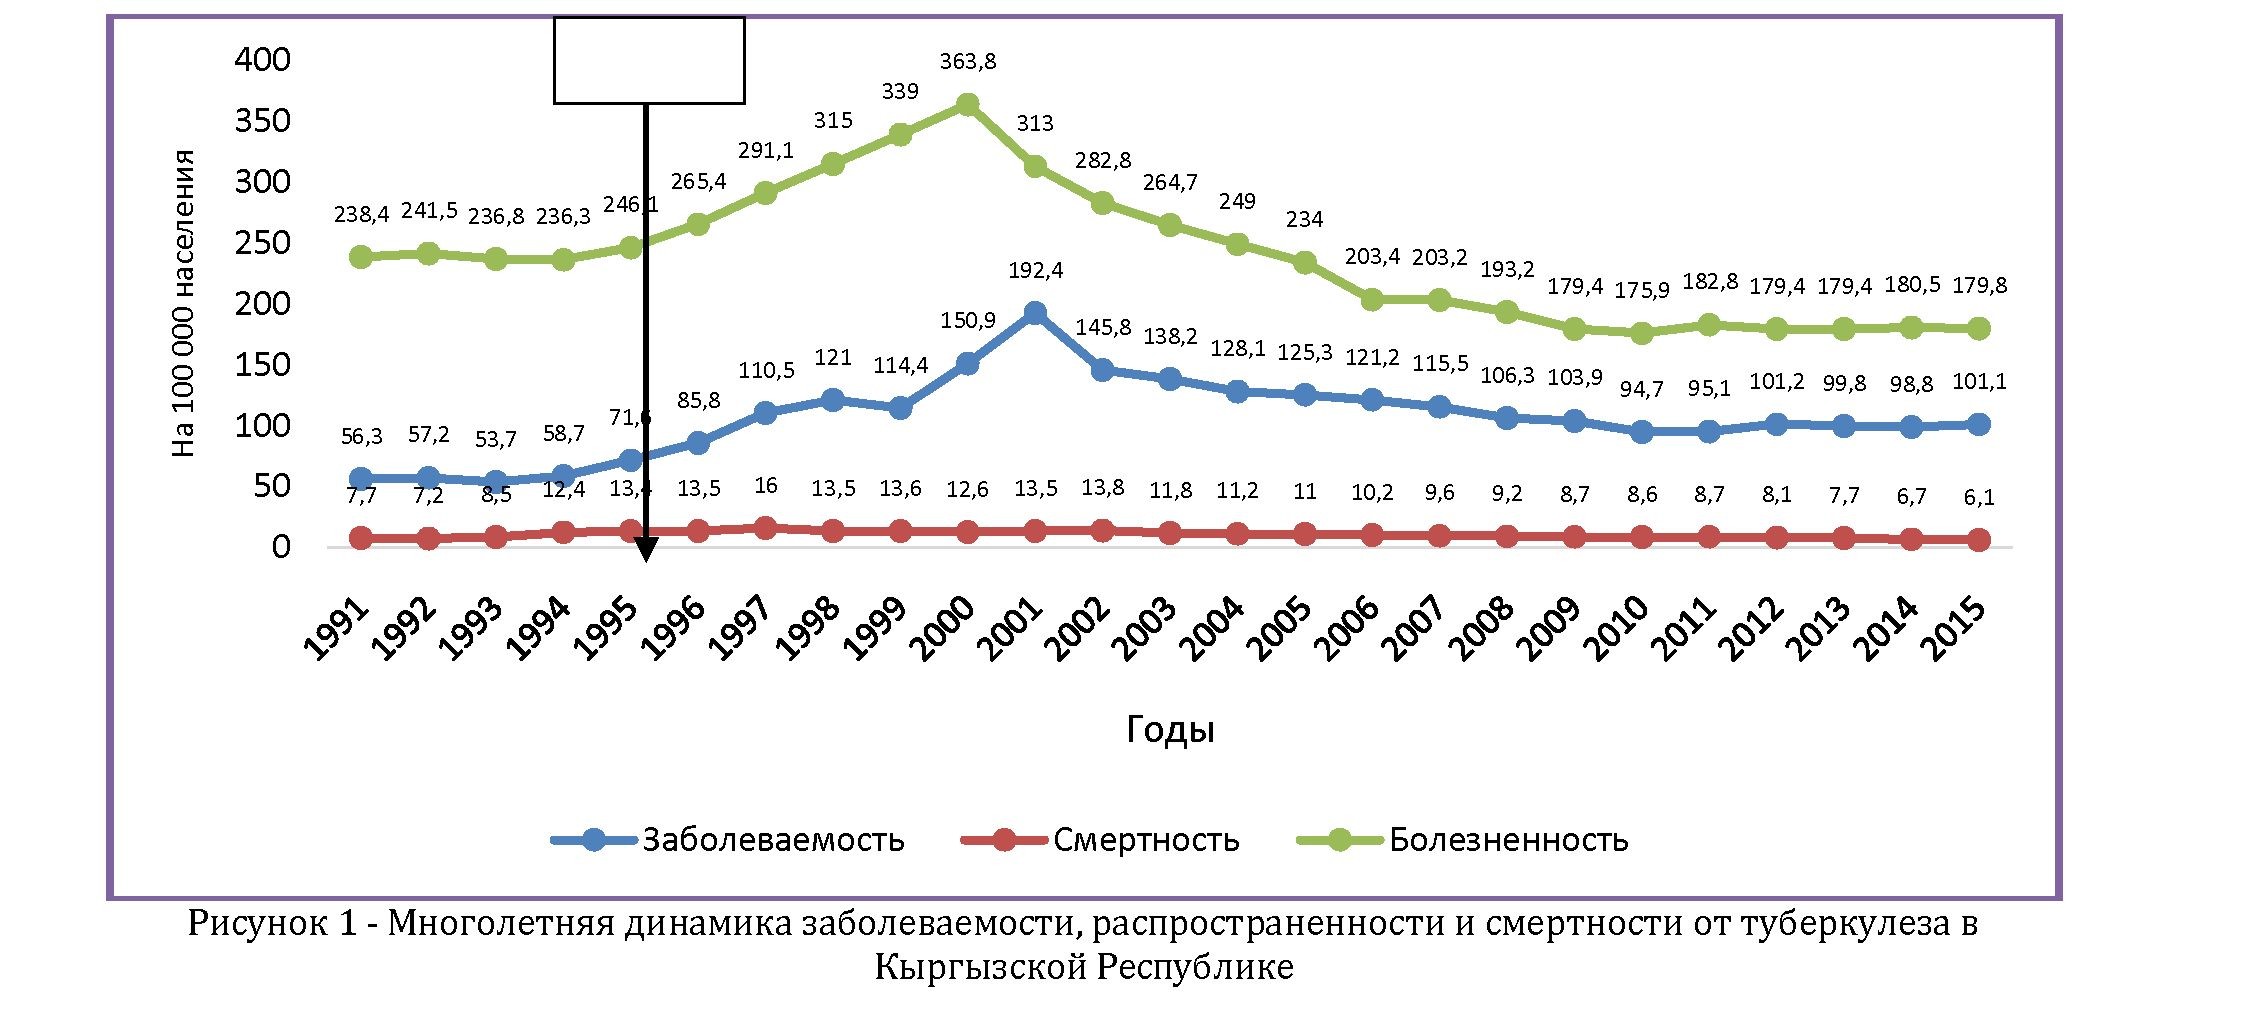 Эпидемиологические аспекты туберкулеза в Кыргызской республике (2011-2015 гг)